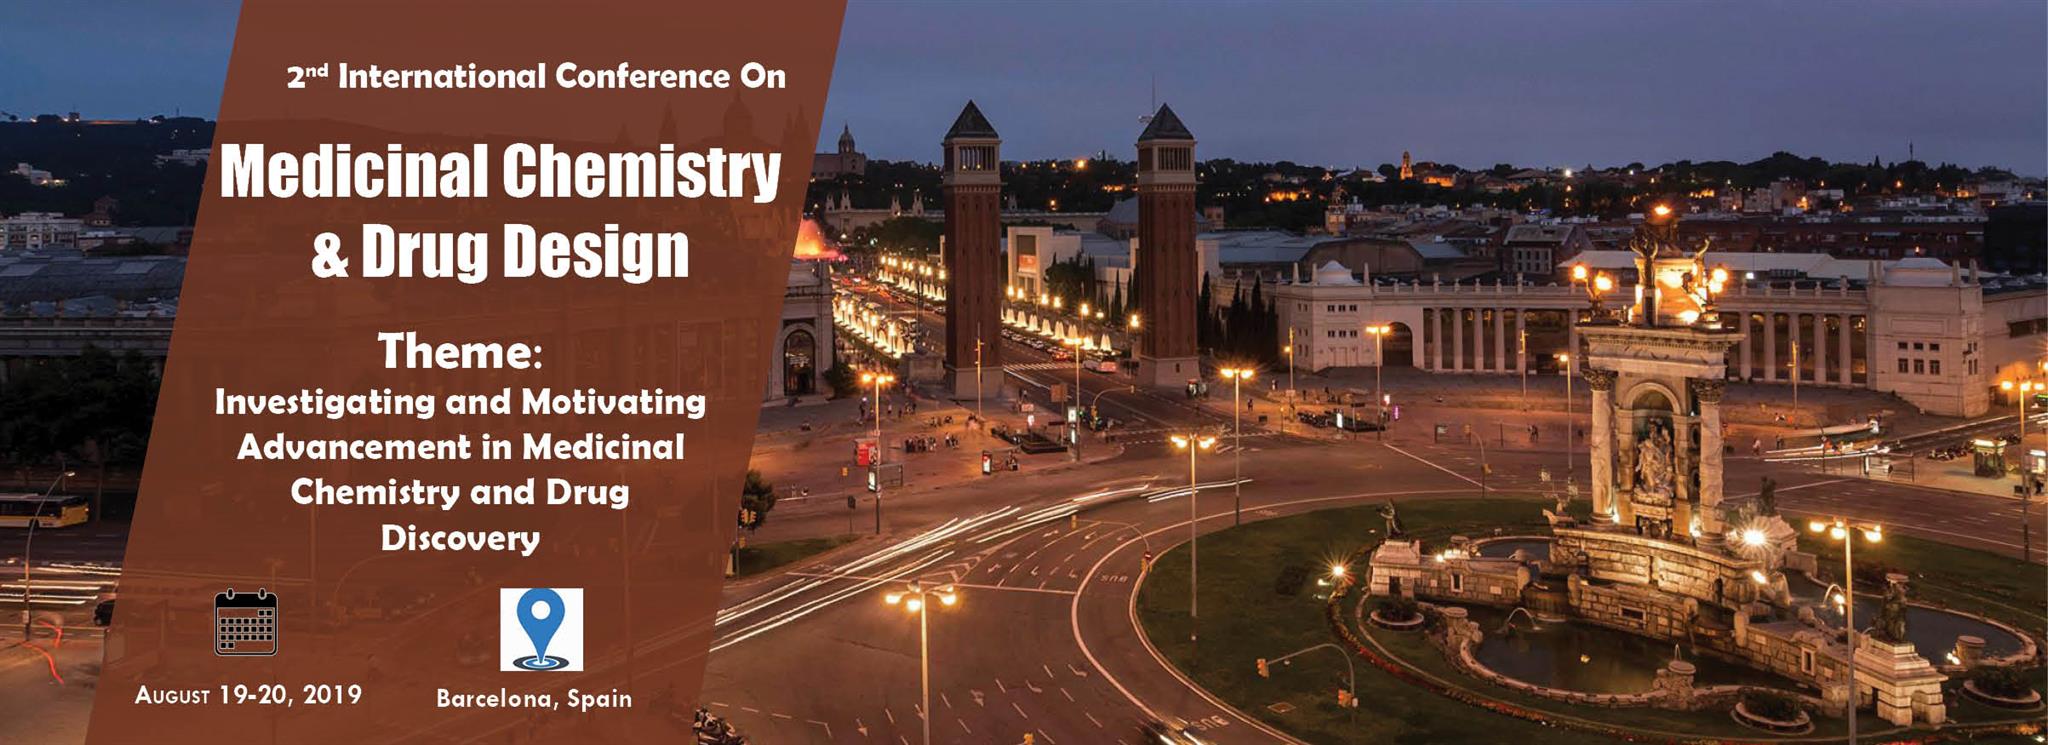 2nd International Conference on Medicinal Chemistry & Drug Design, Barcelona, Spain,Aragon,Spain